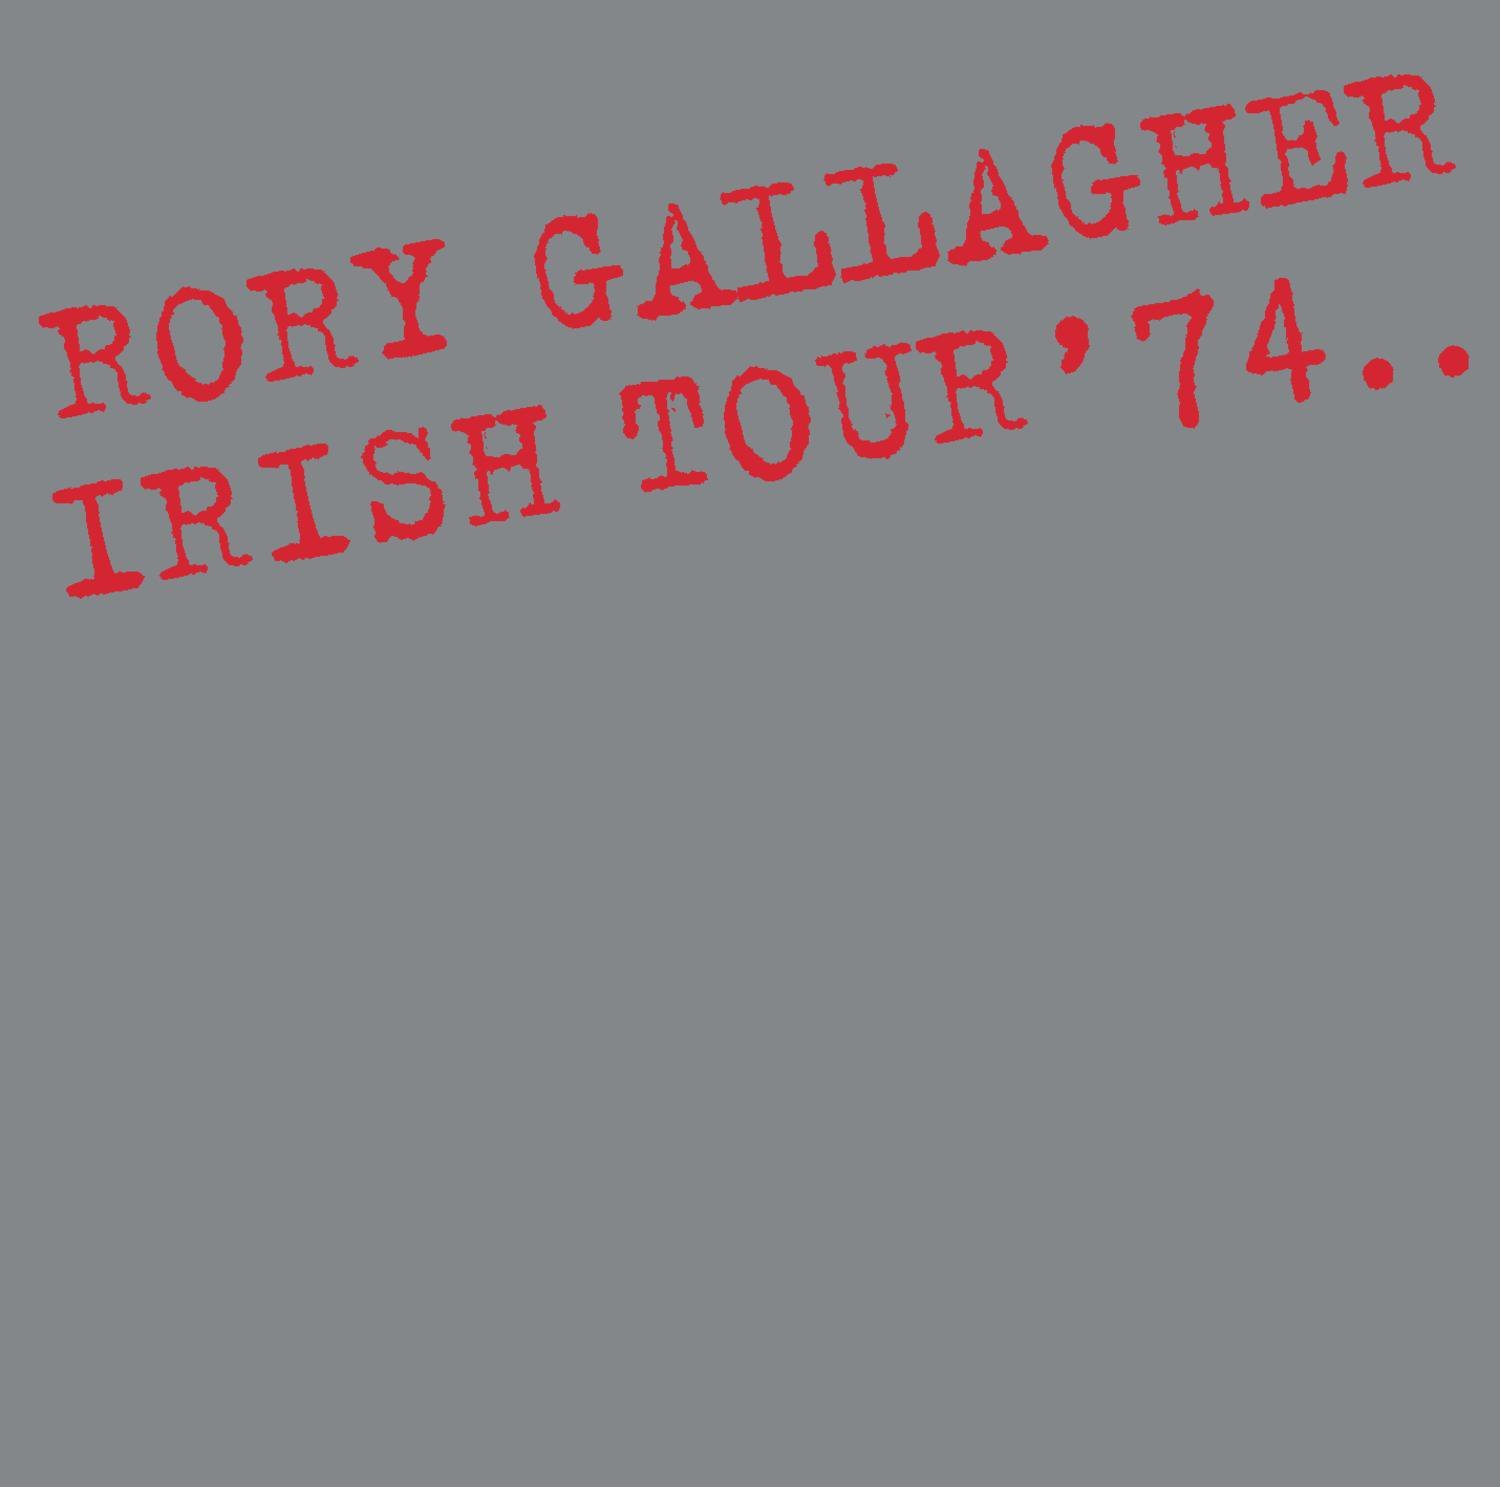 rory gallagher irish tour 74 full album